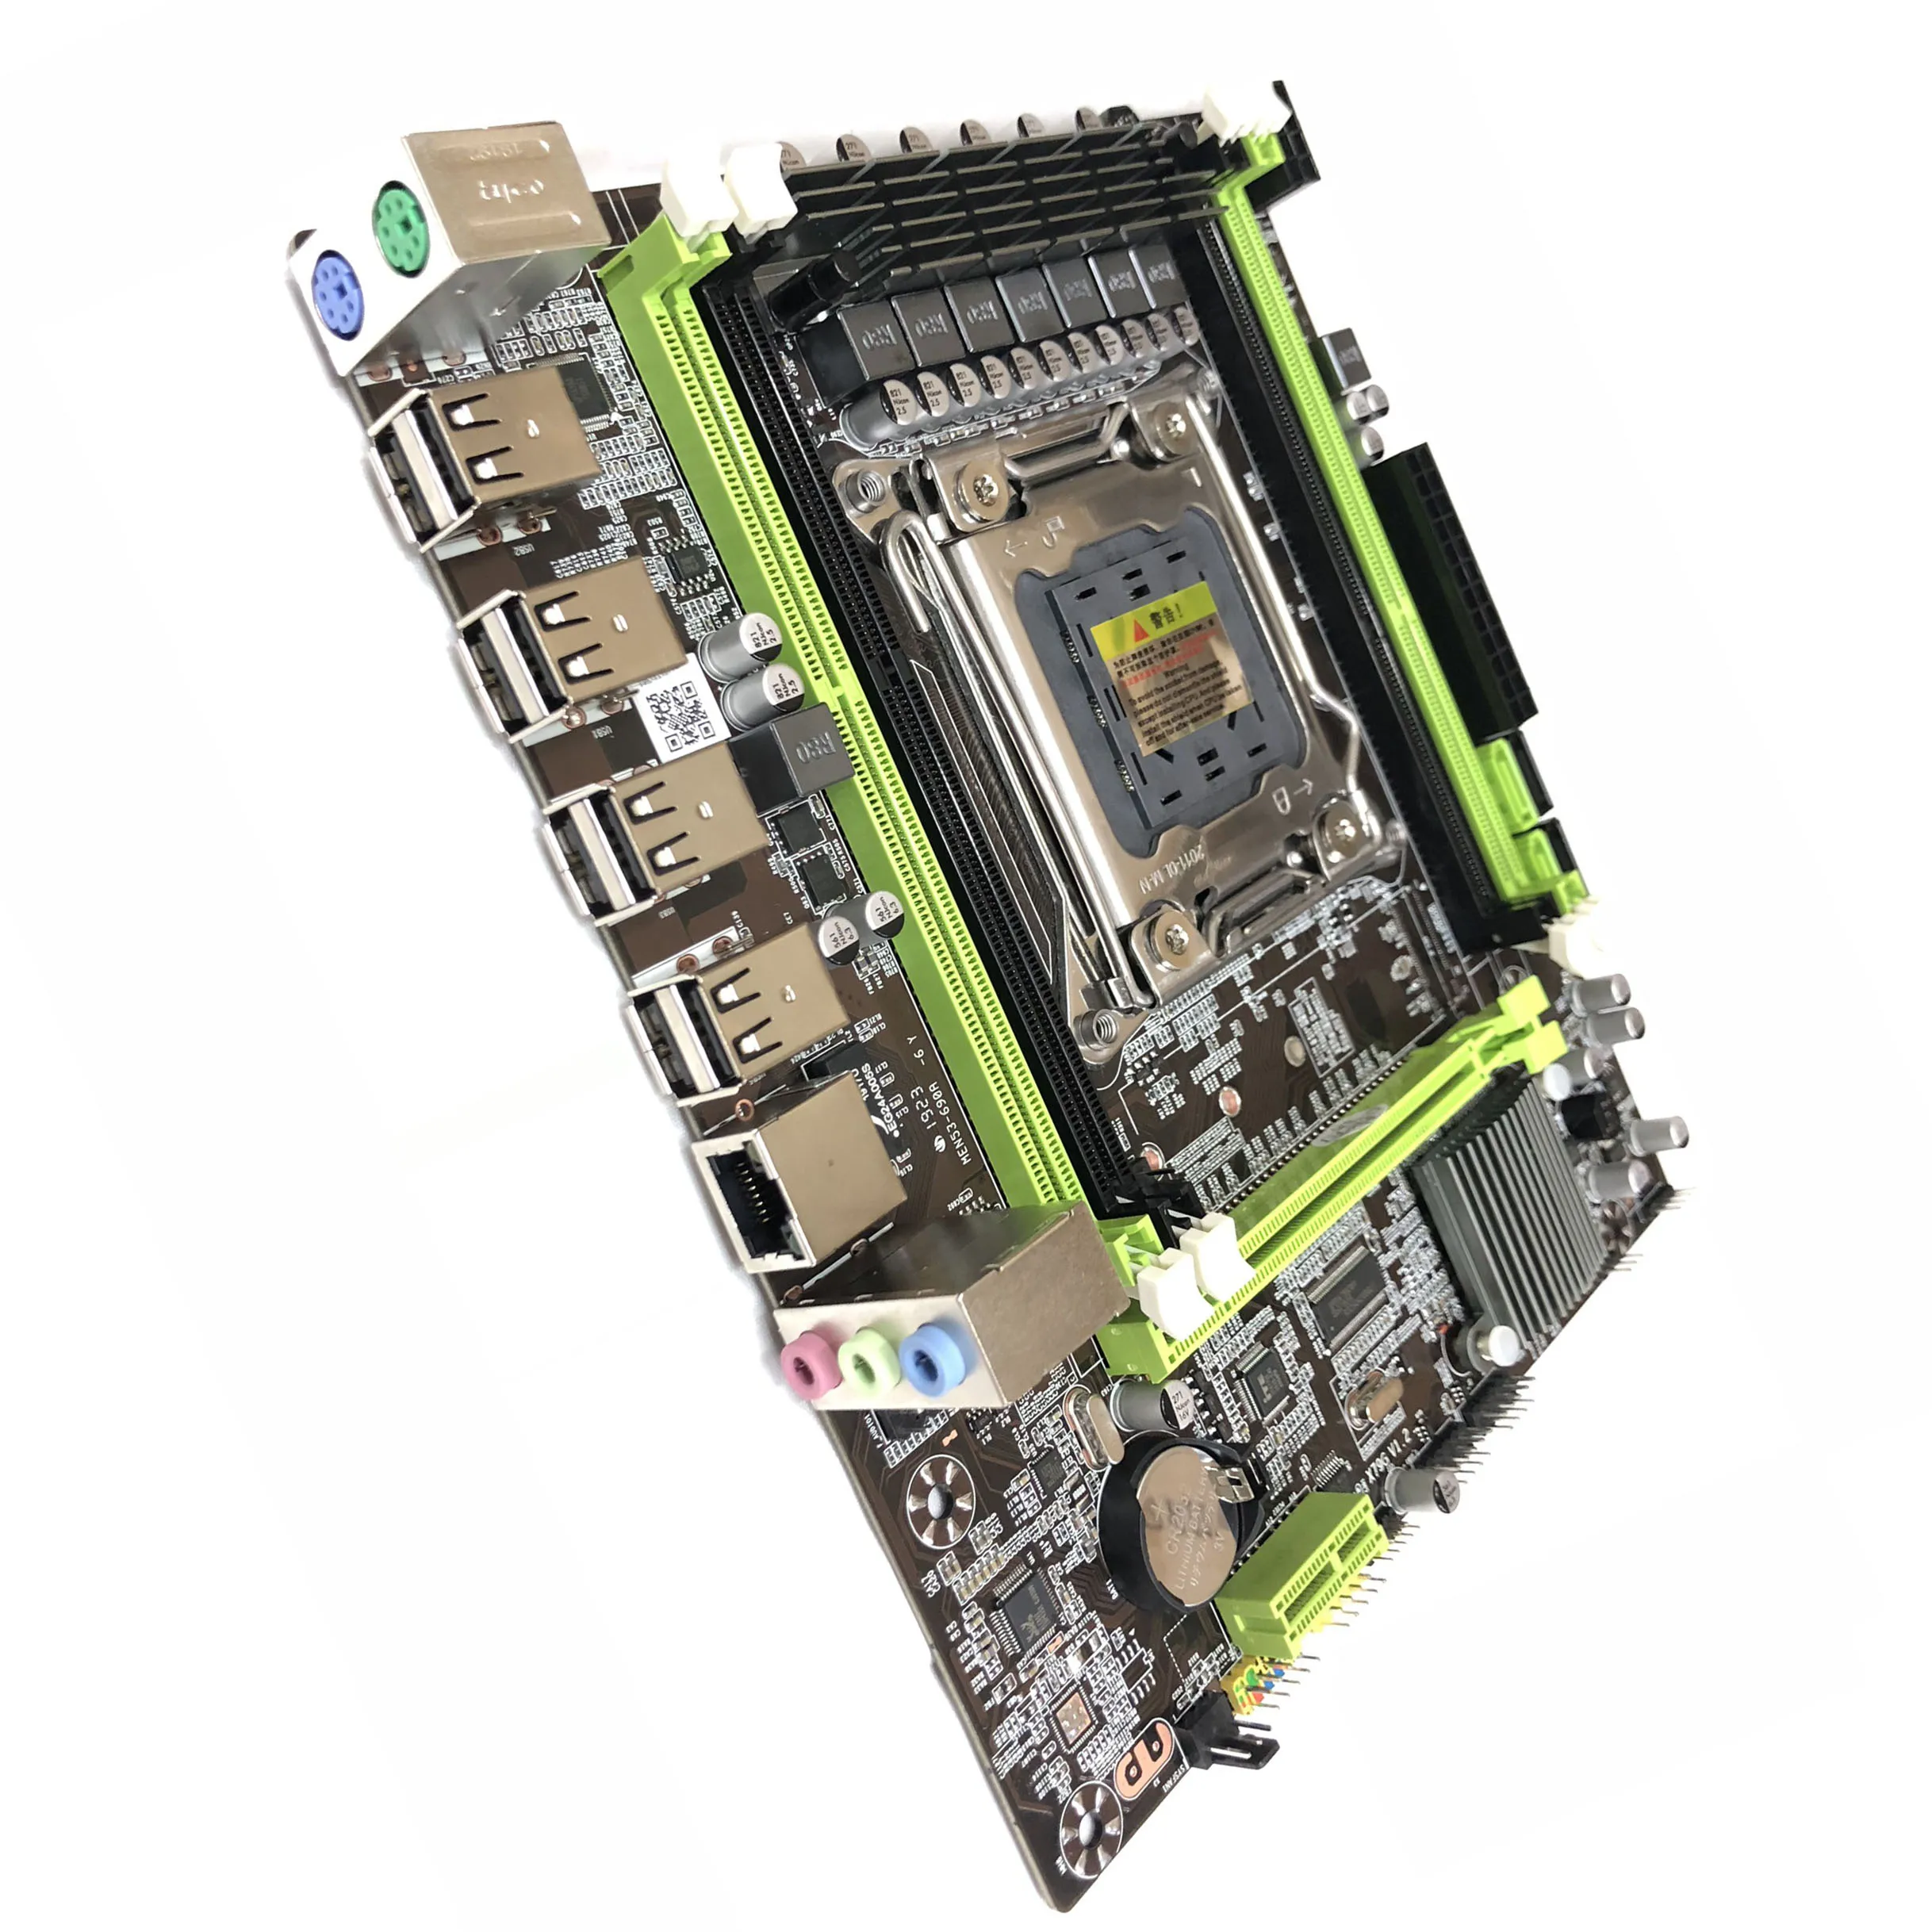 8 USB Ports SATA 3 DDR3 RAM Motherboard Memory Module Computer Chip Remover Main Board Repair Resistor Tool Setting